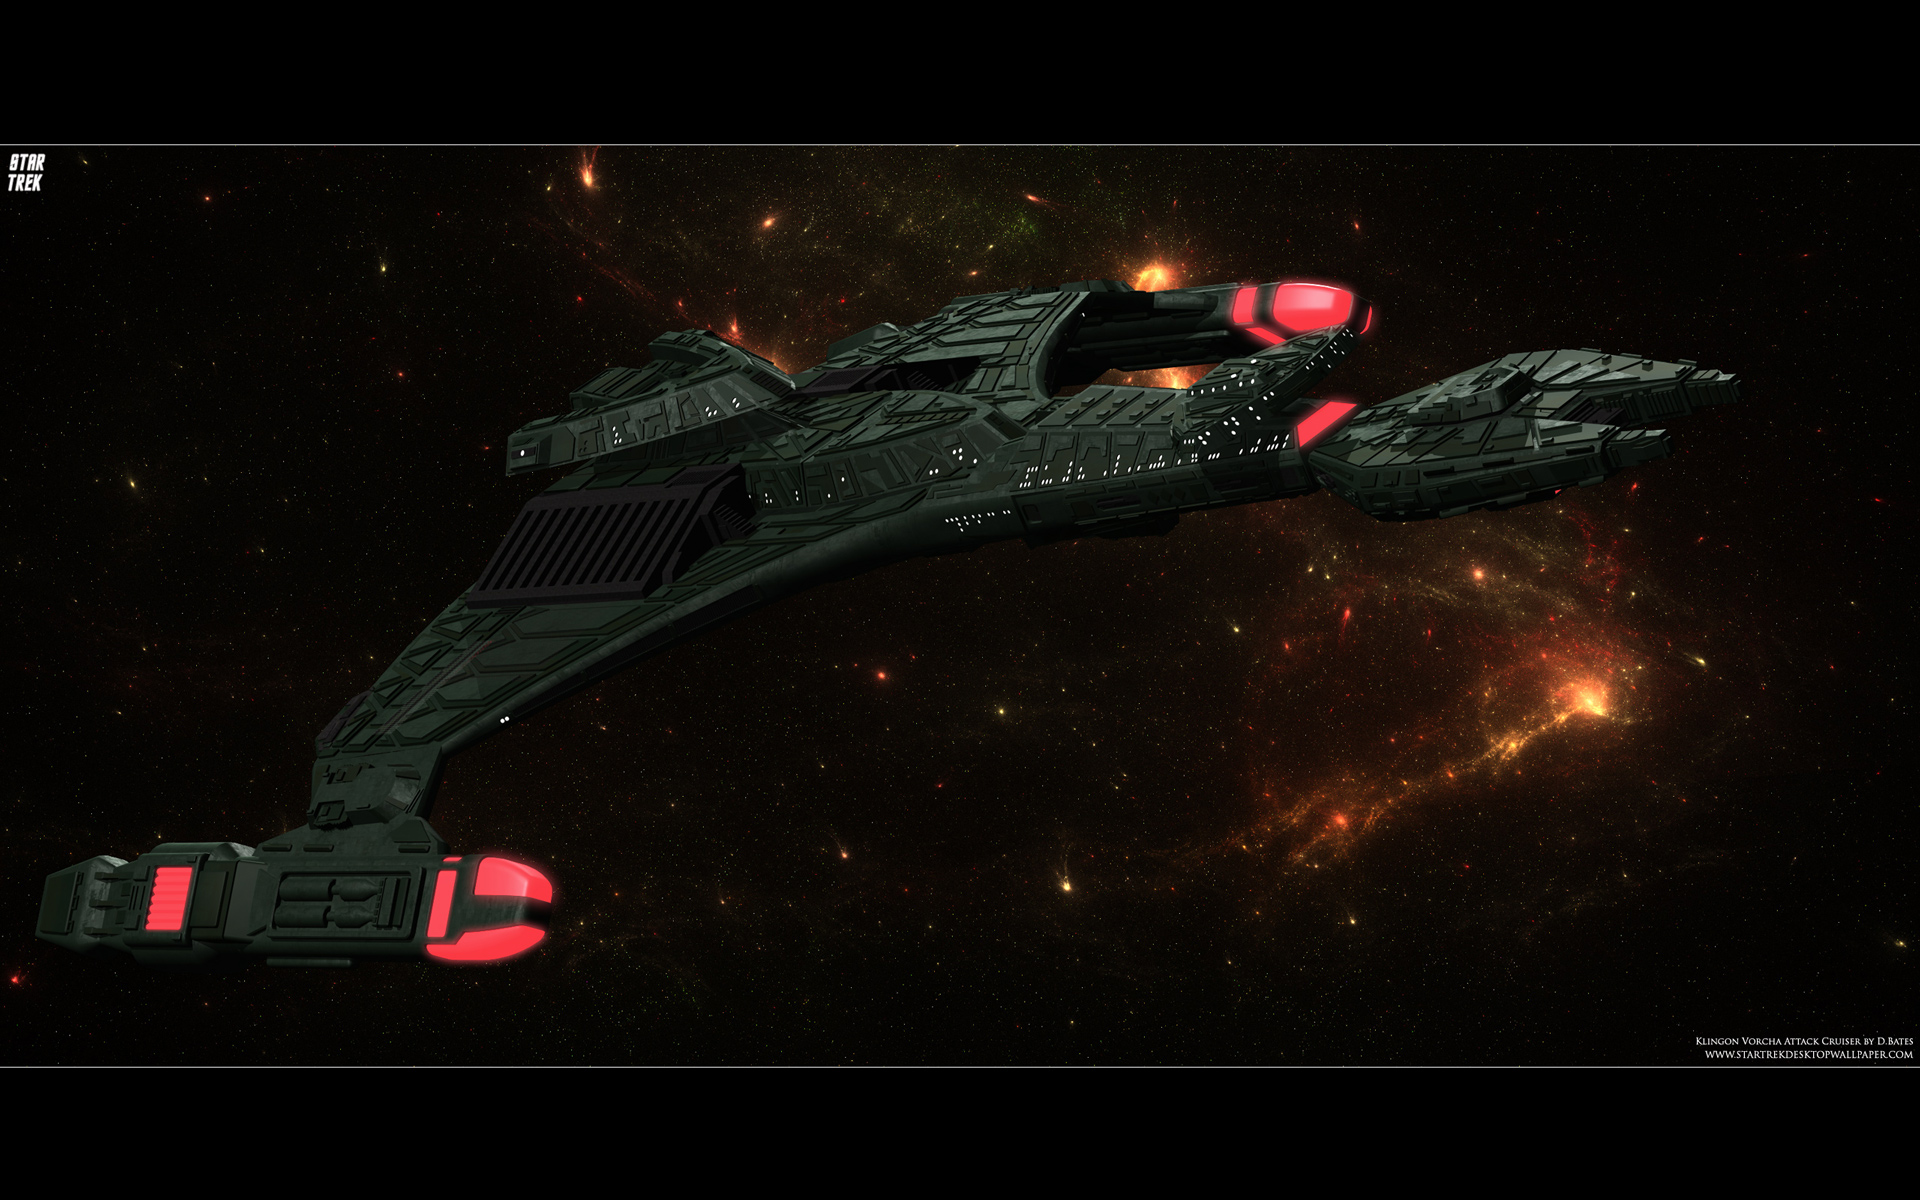 Klingon Ships Wallpaper Star Trek Vor Cha